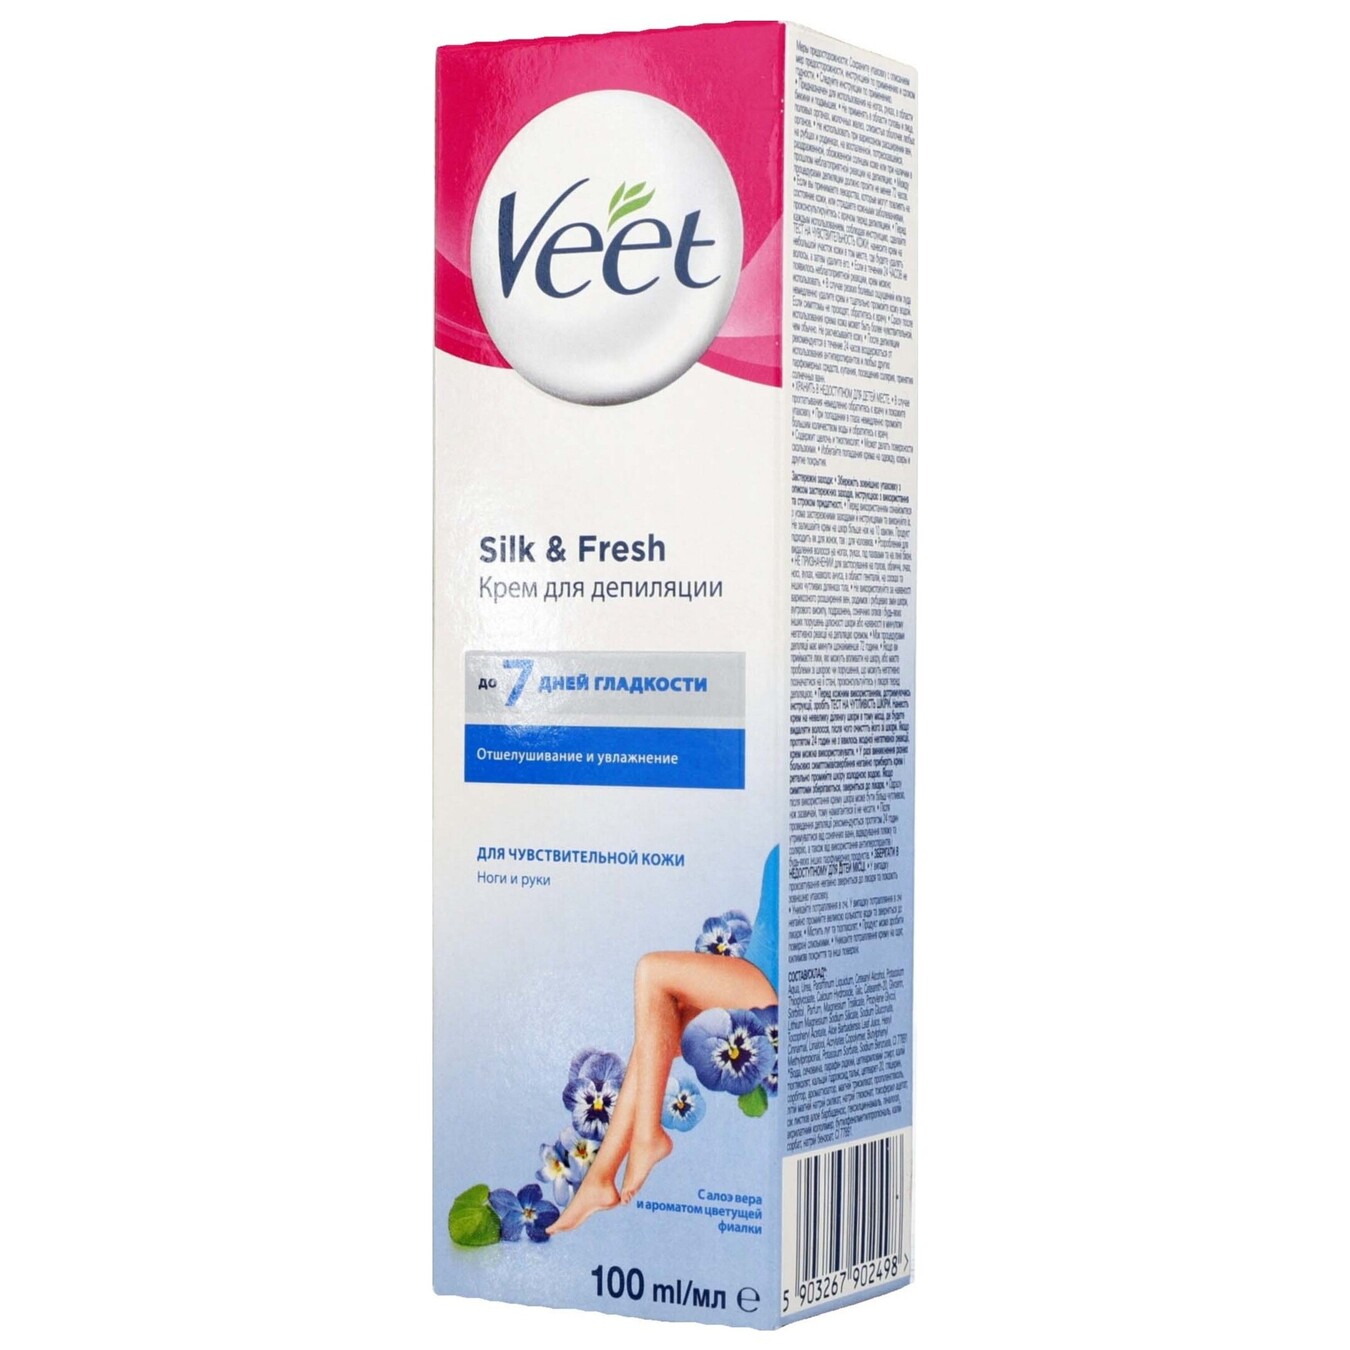 Cream for depilation Veet in the range of 100 ml 2